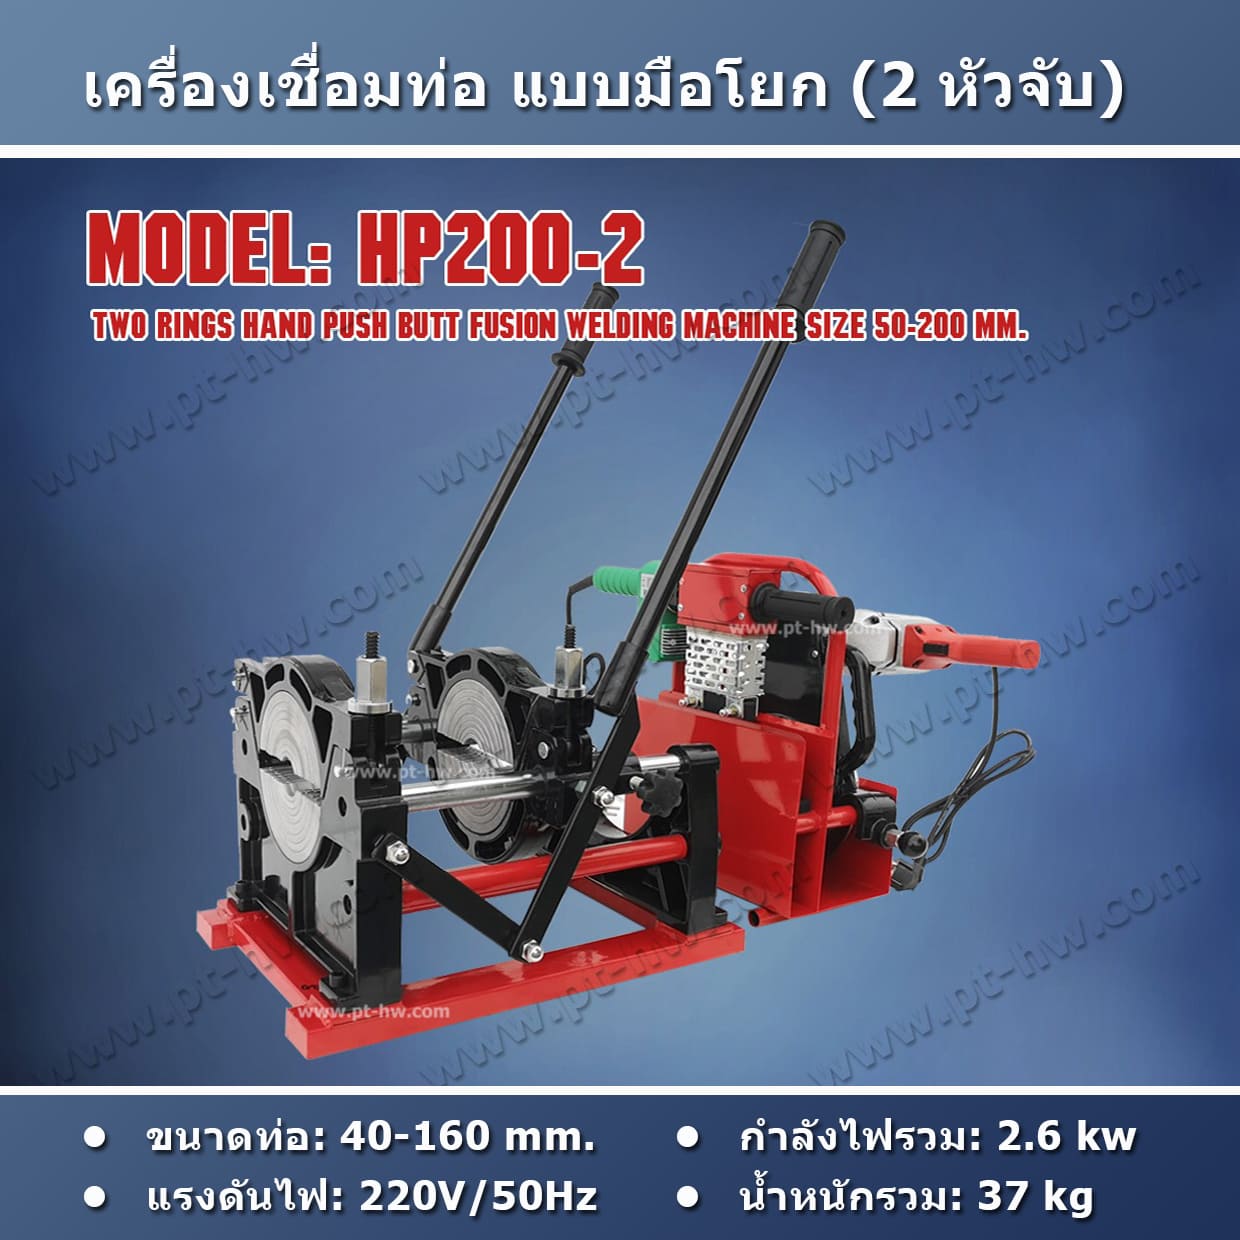 เครื่องเชื่อมท่อ HDPE 200 mm. รุ่น HP200-2